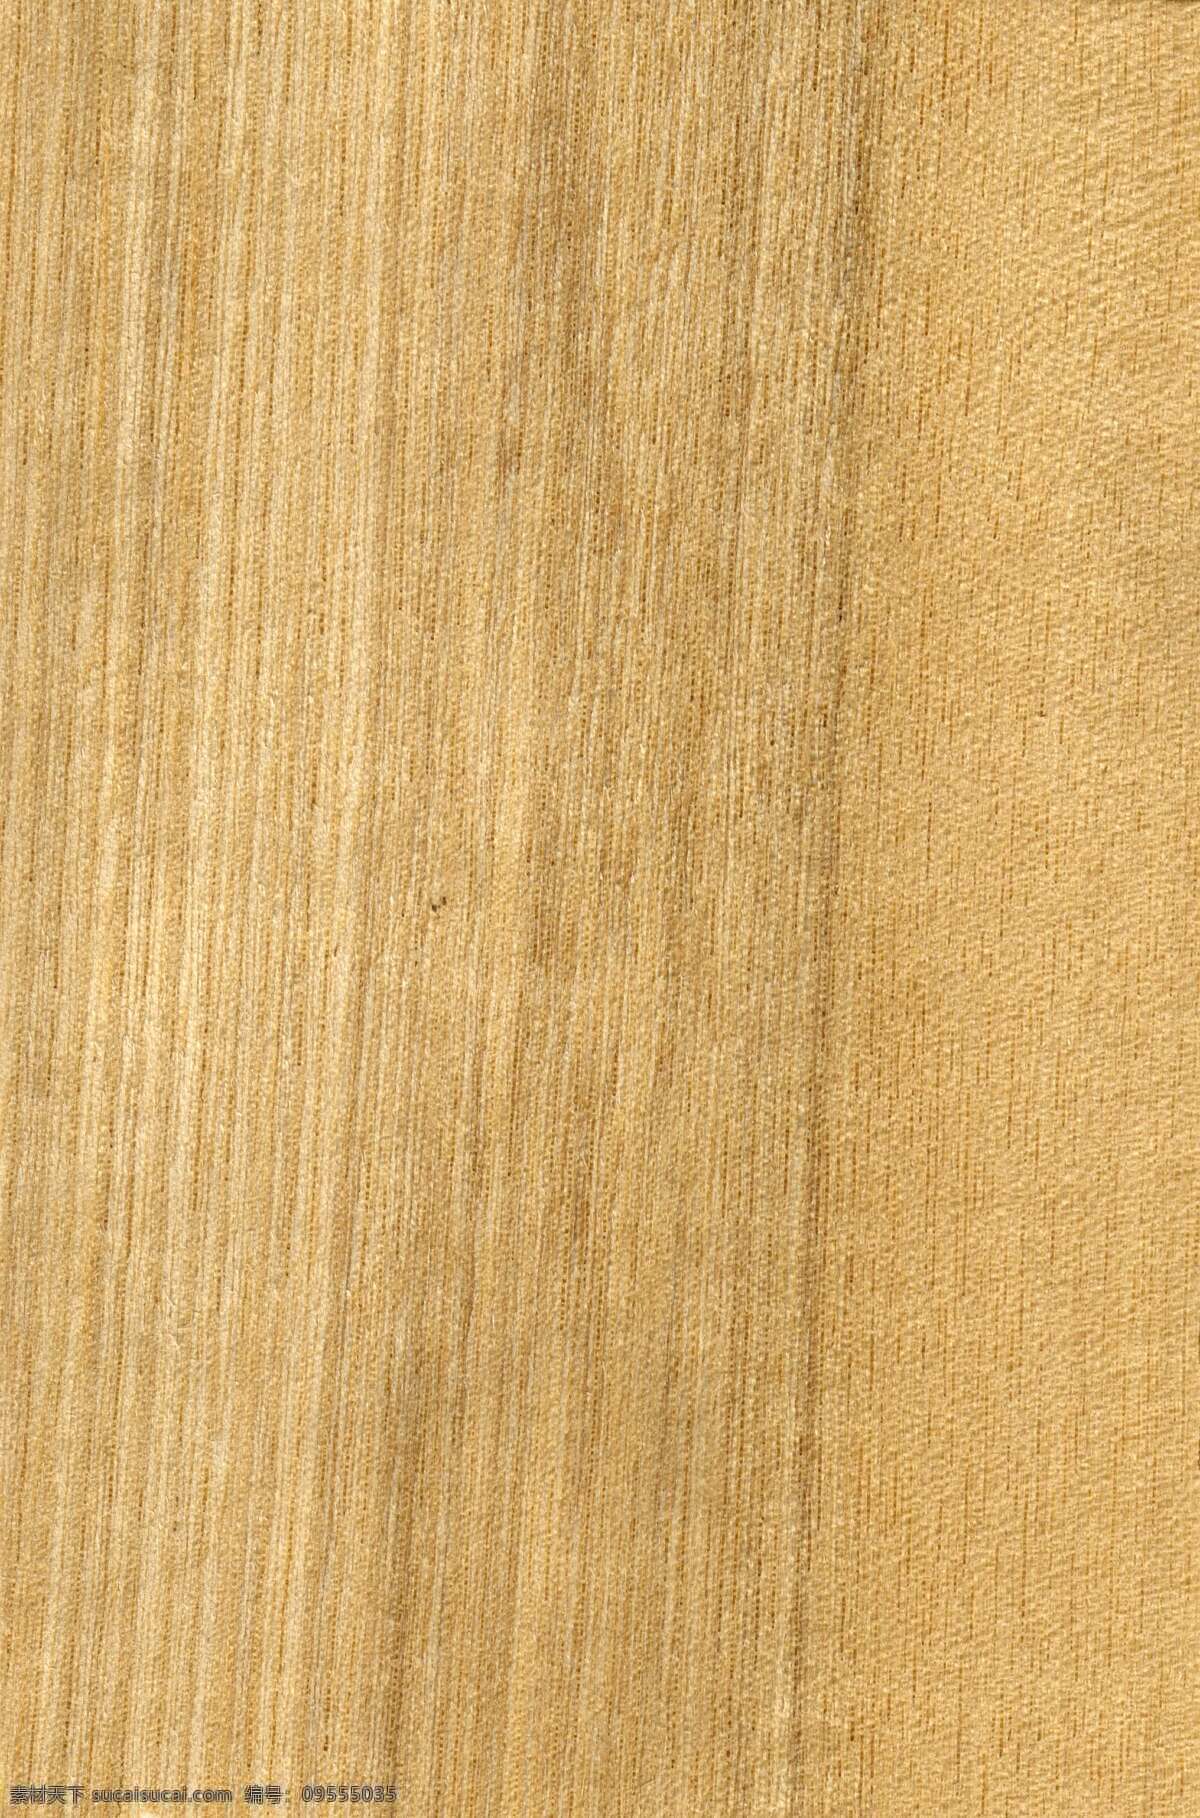 最新 简约 室内 枫木 木纹 贴图 3dmax 材质 高清 模板下载 谷建室内设计 谷 建 室内设计 色